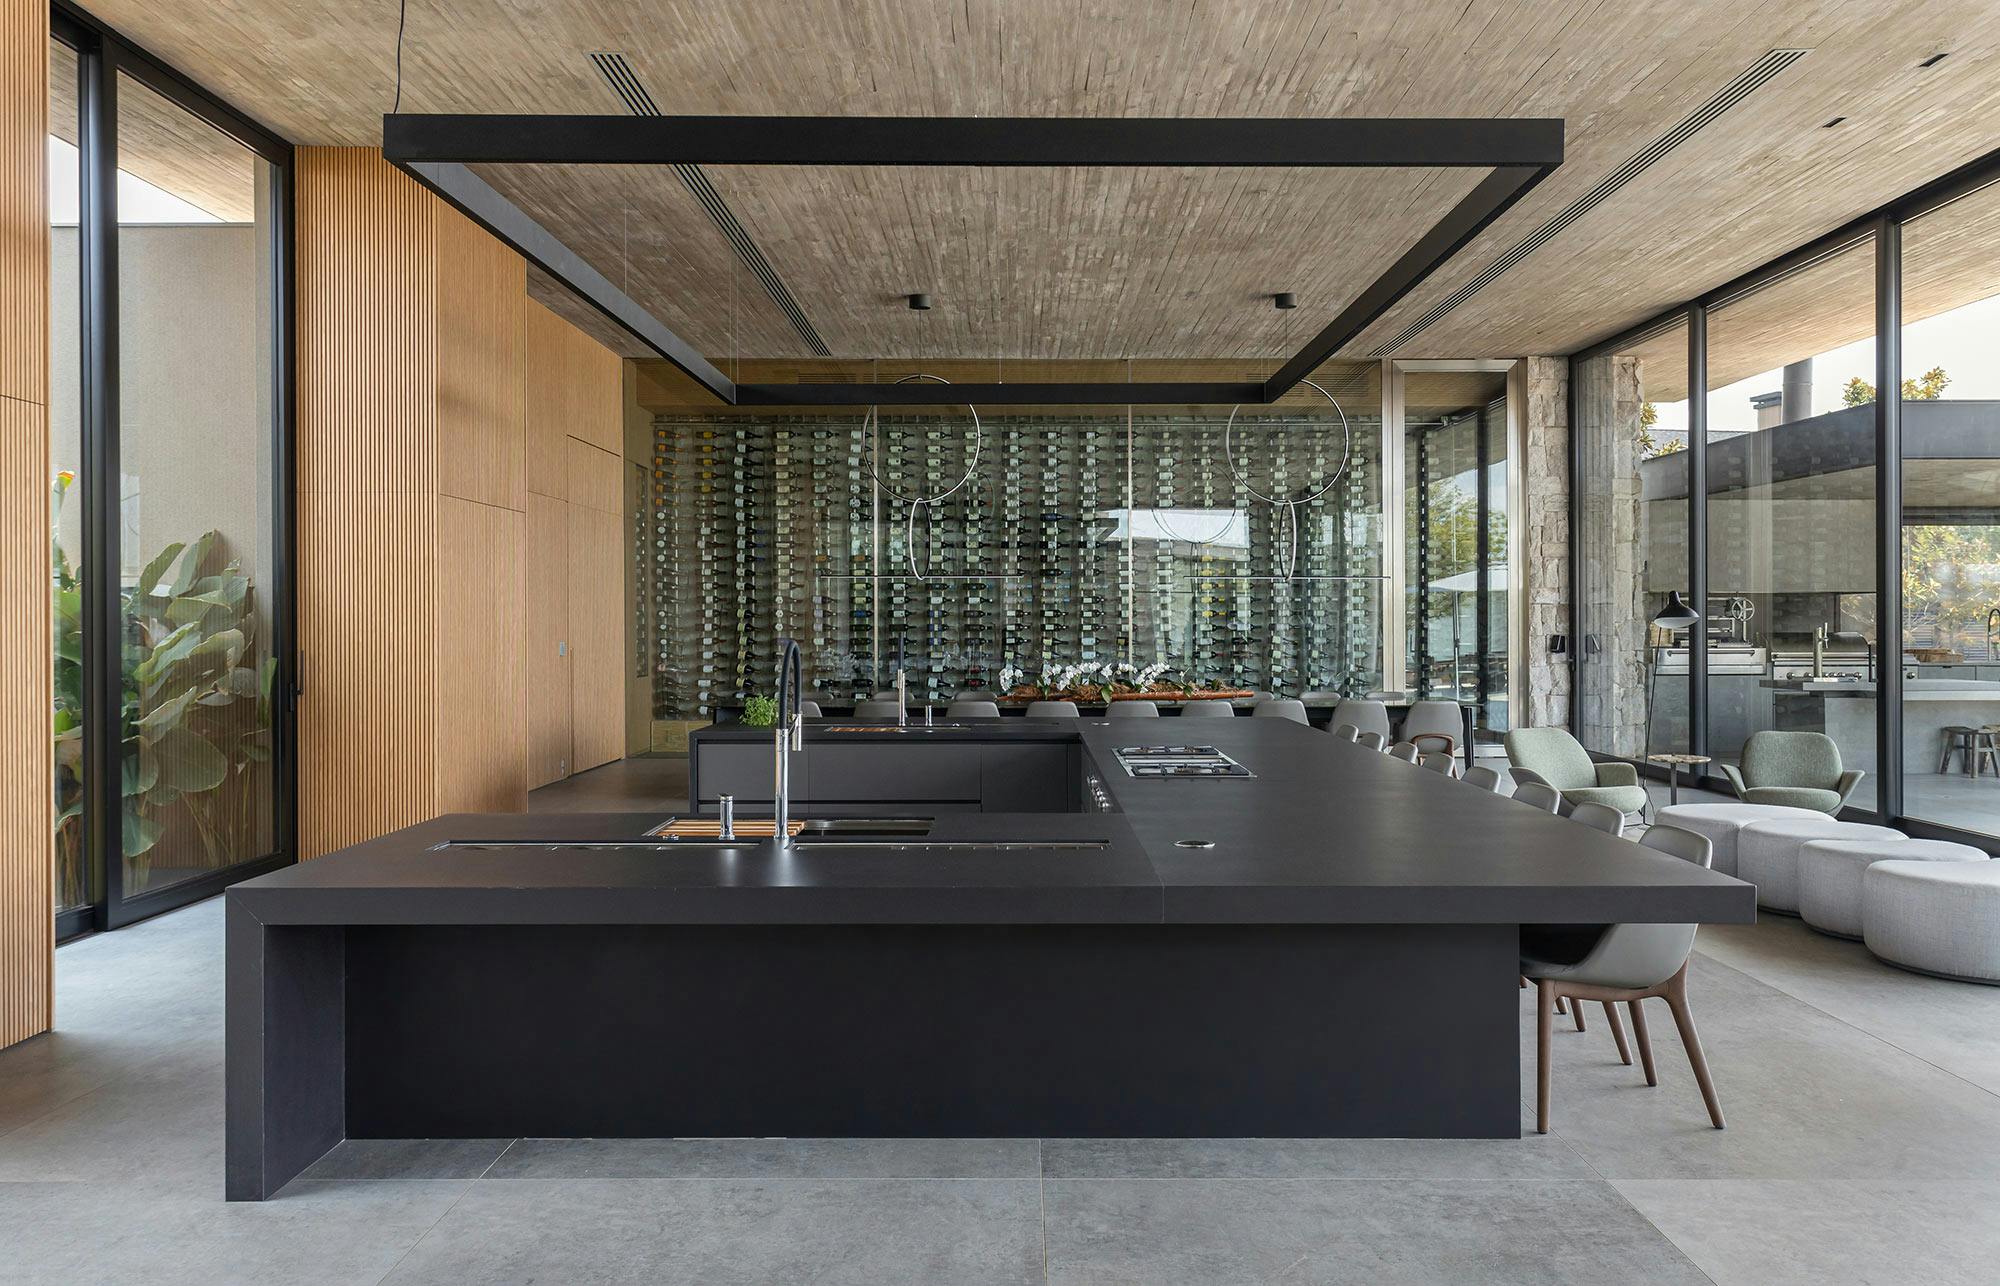 Bildnummer 37 des aktuellen Abschnitts von Oliver Goettling's futuristic kitchen: design and funcionality in limited spaces von Cosentino Deutschland